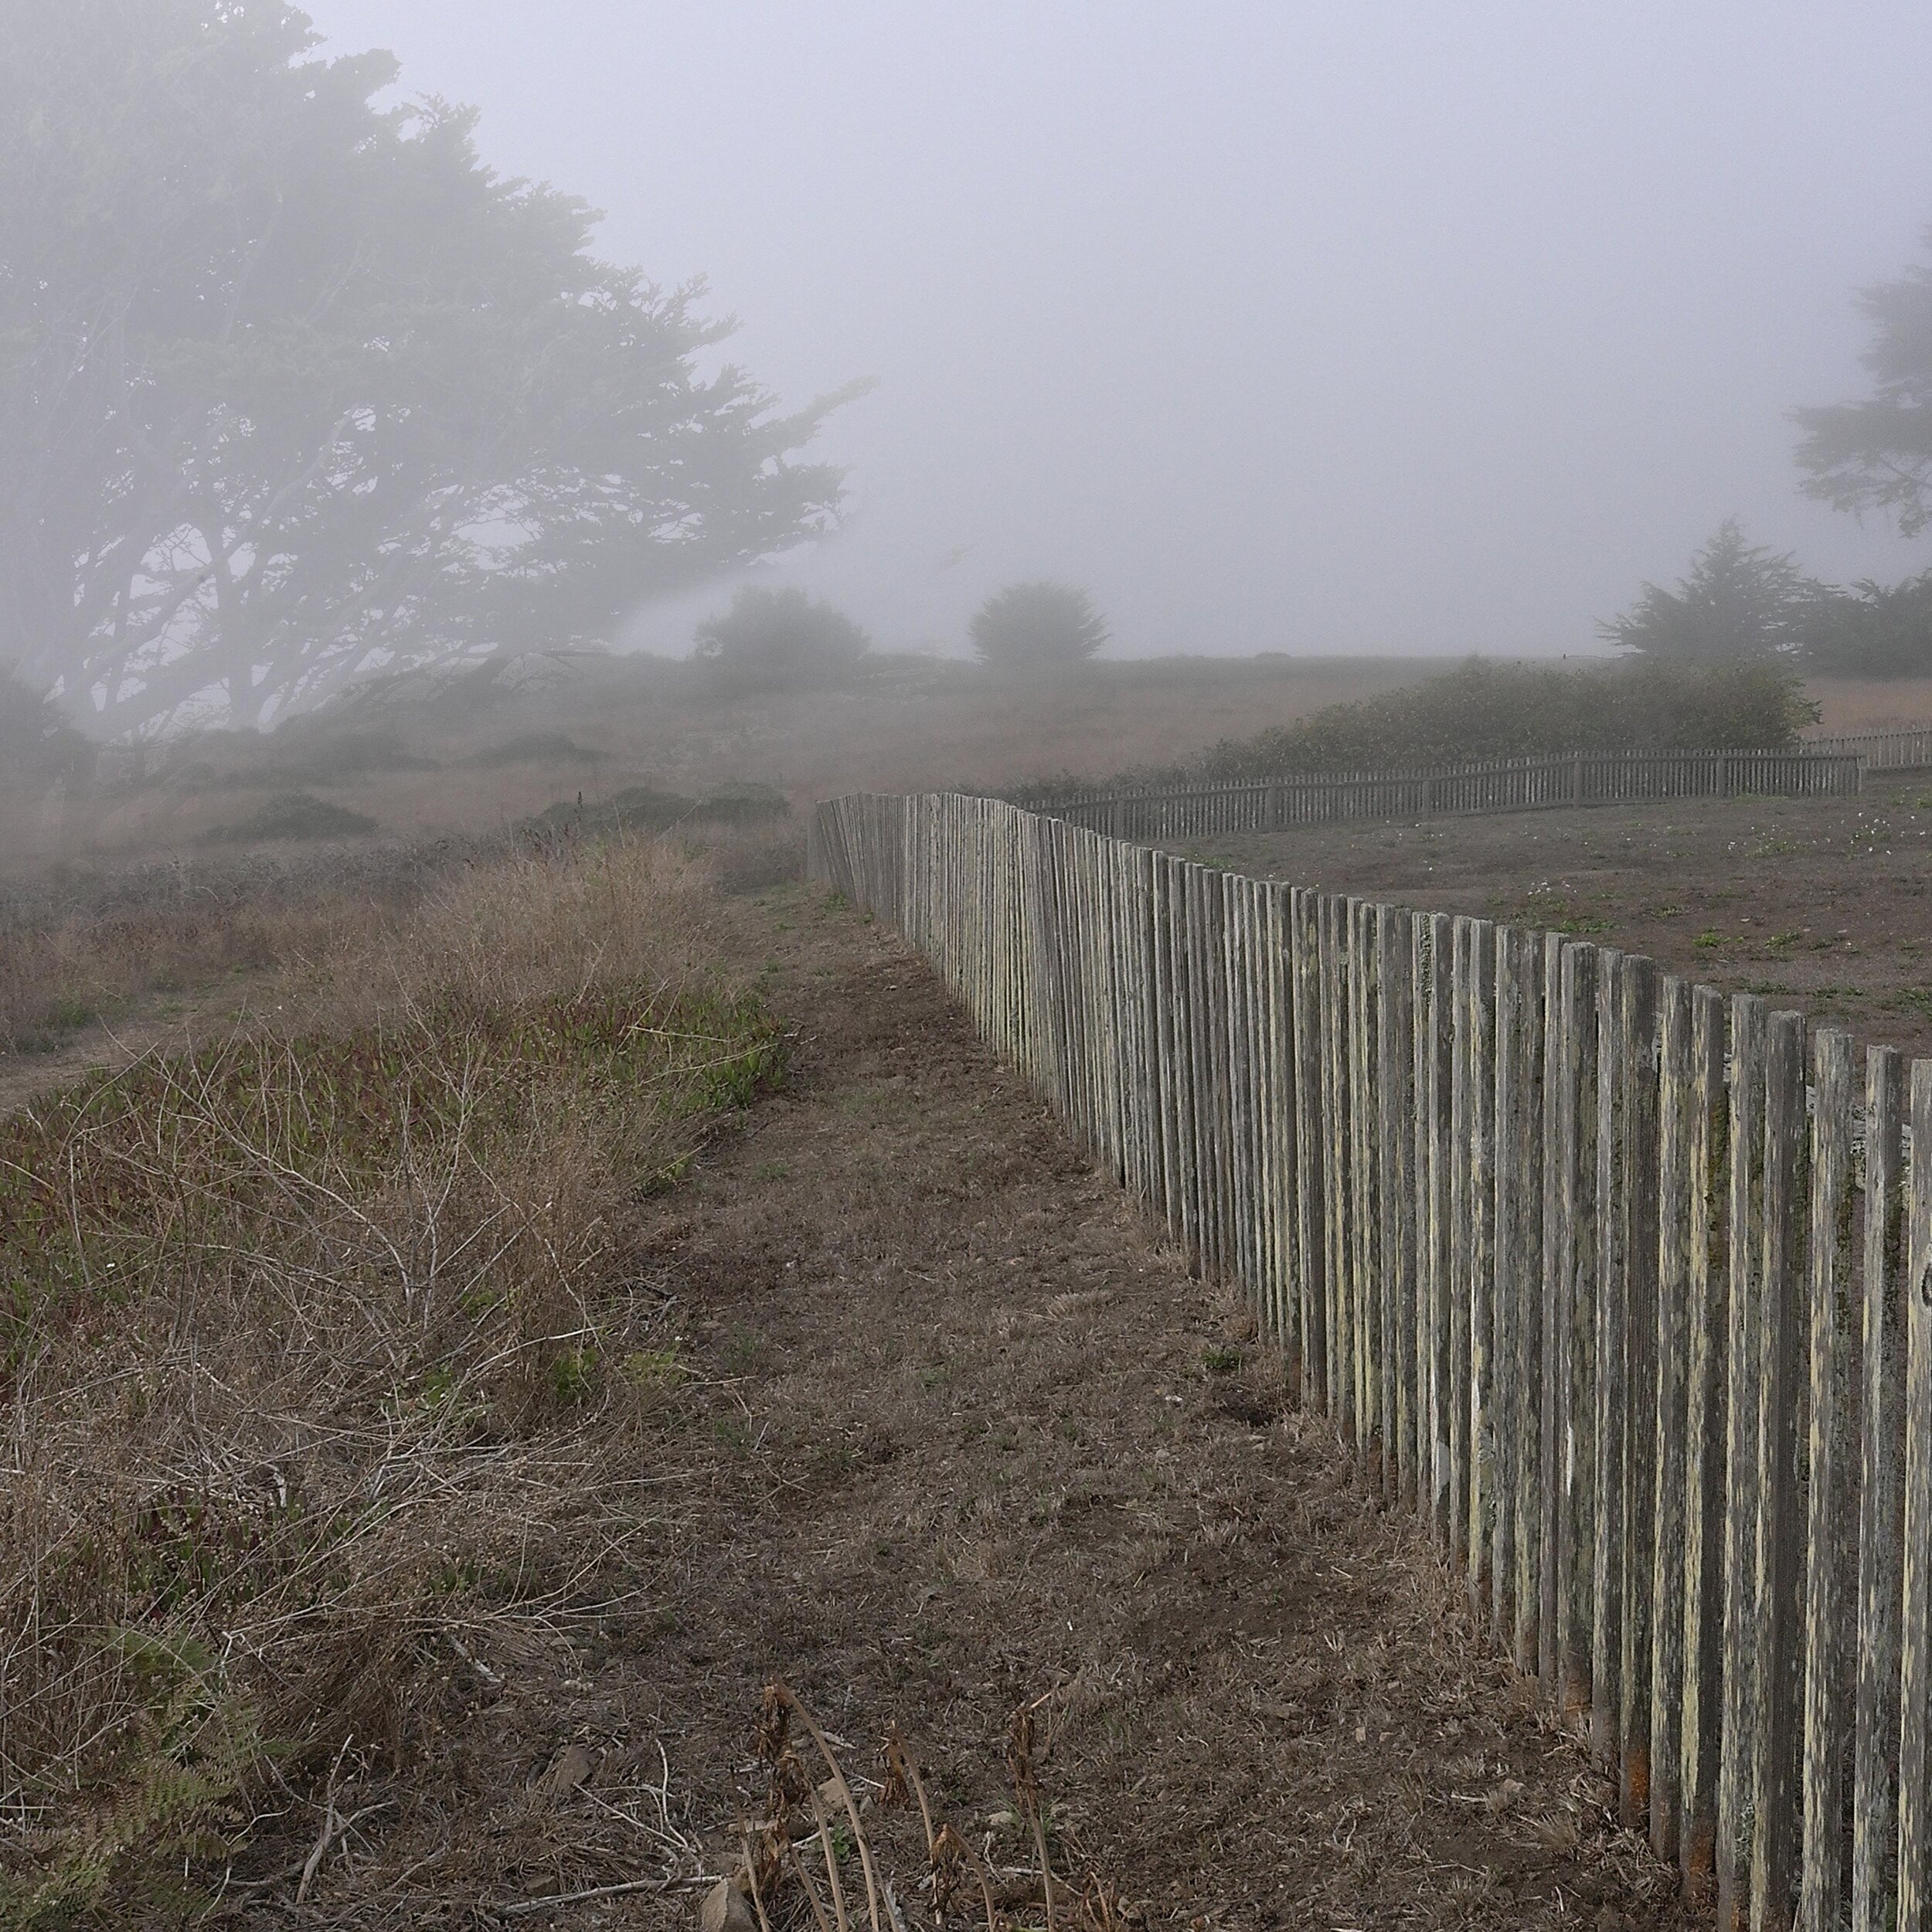  Fog Fence, 2015 